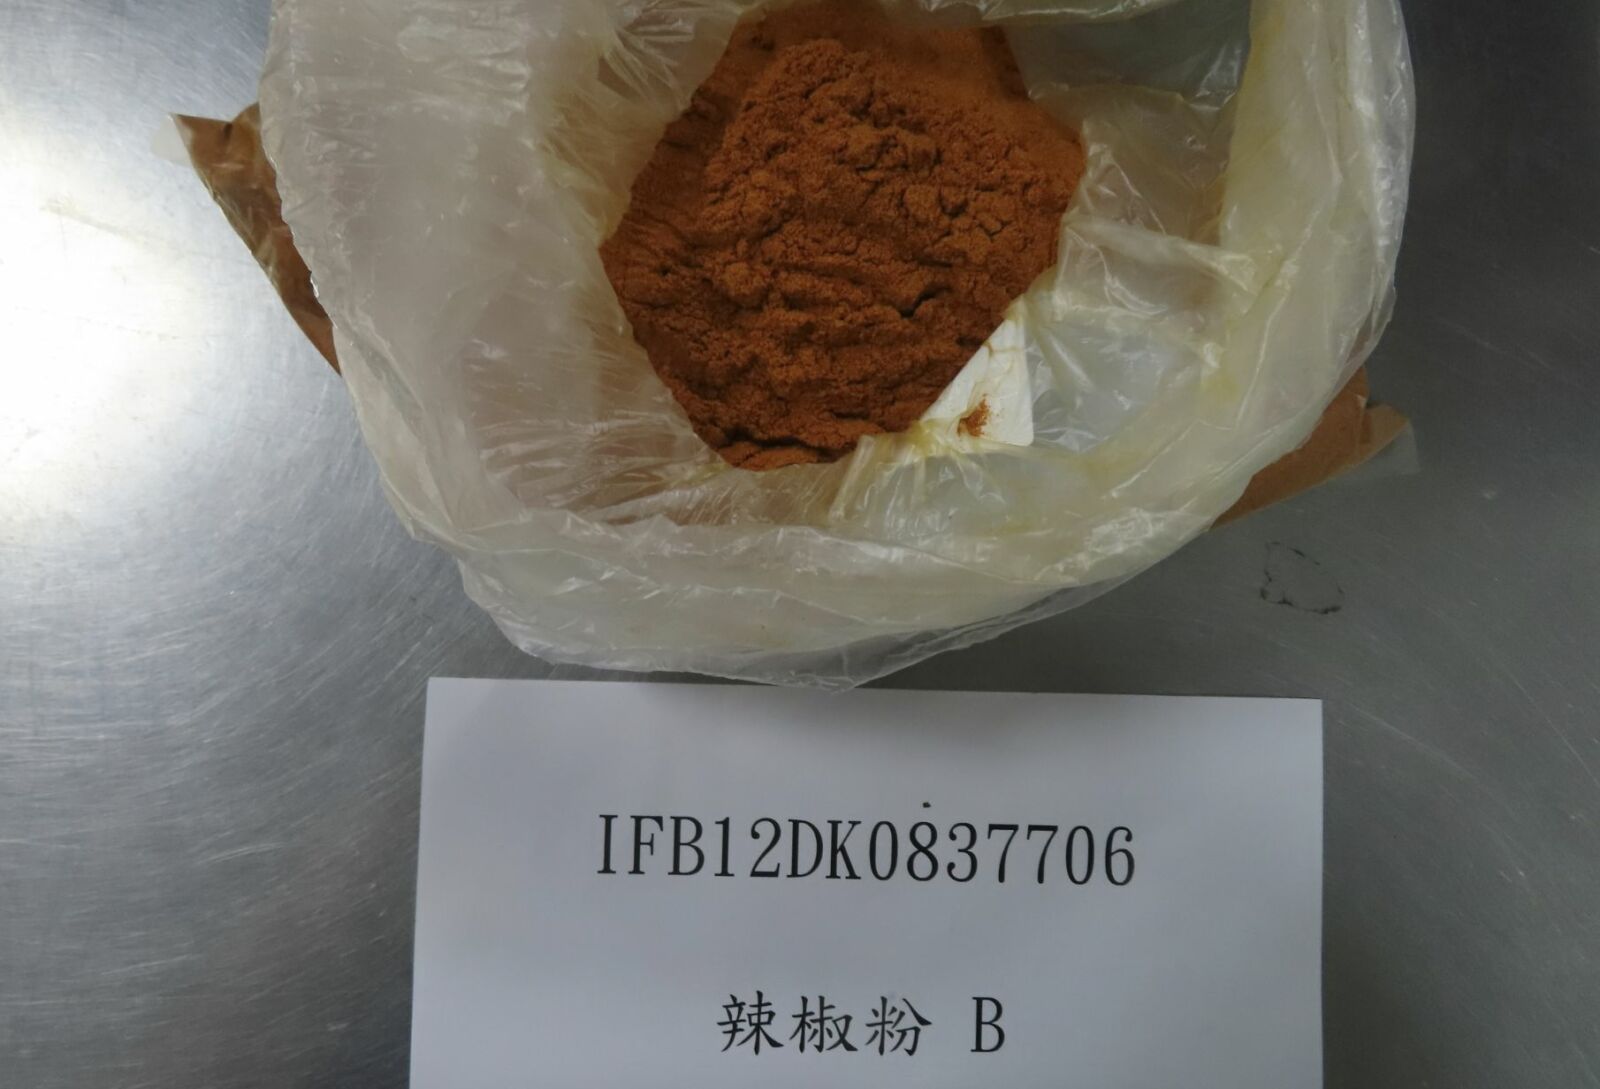 中國「毒粉」竟銷台！辣椒粉驗出致癌工業染料  上千公斤全染蘇丹紅